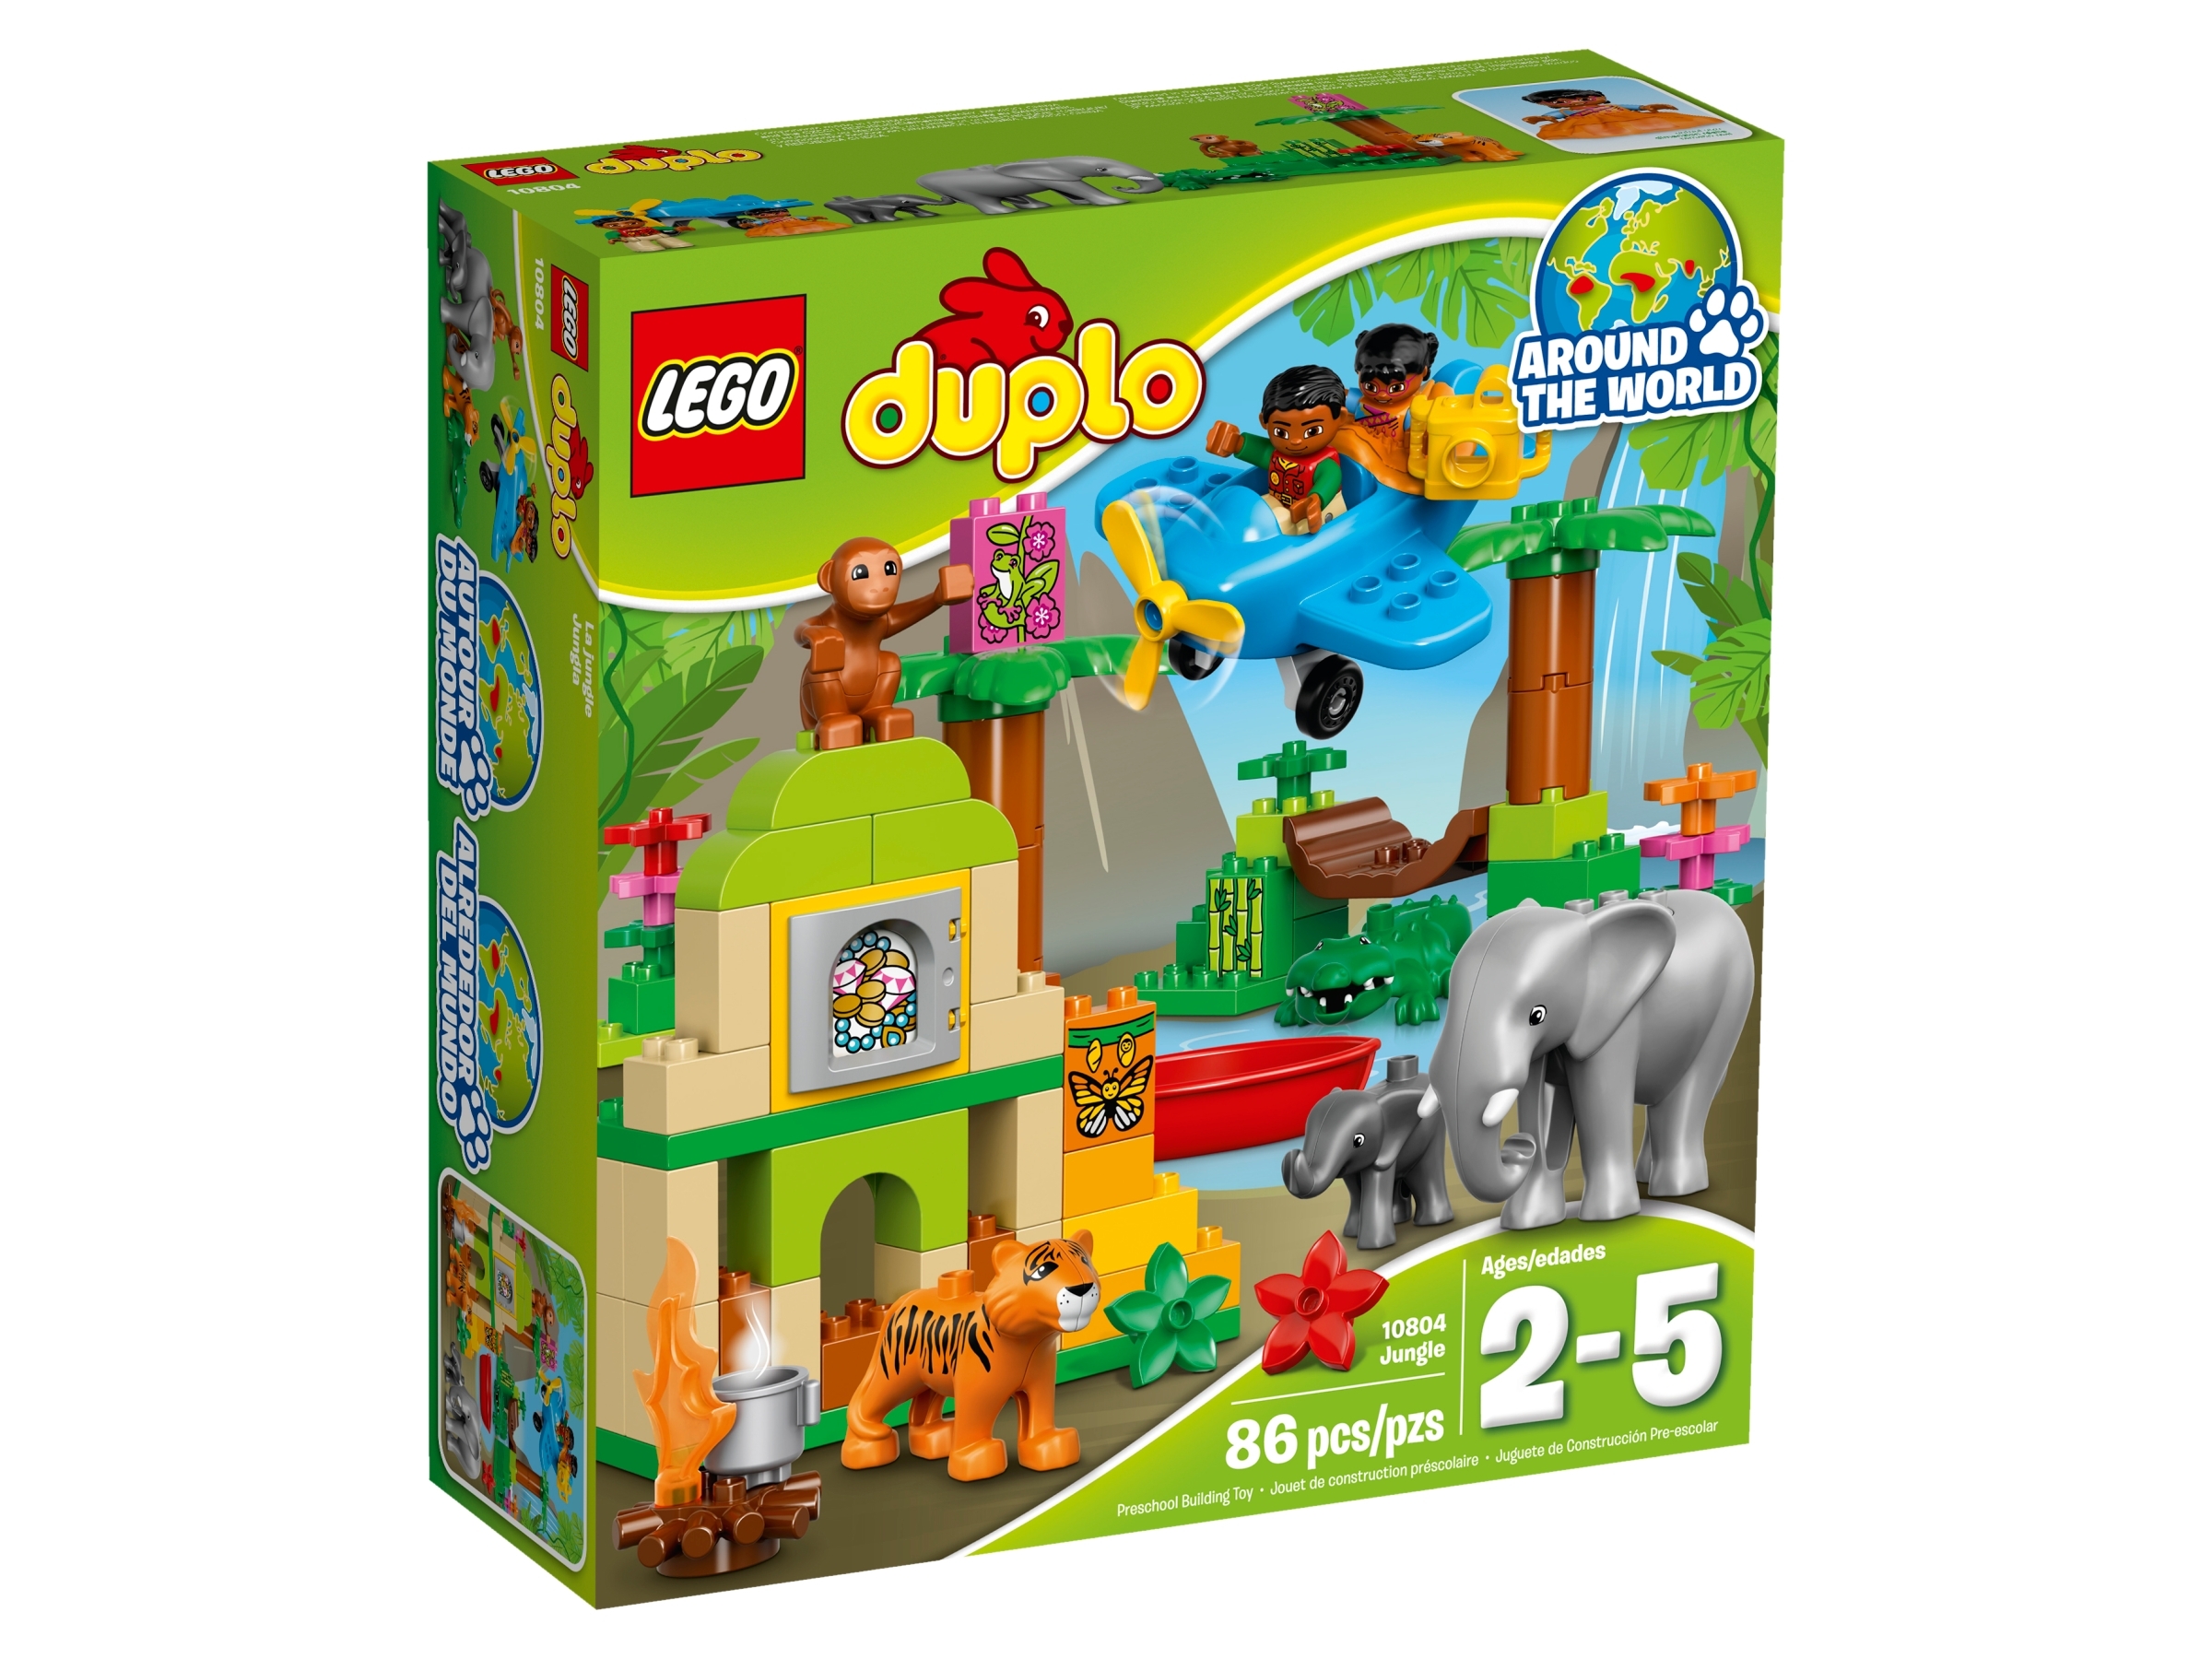 Spectacle Gør det tungt Vær venlig Jungle 10804 | DUPLO® | Buy online at the Official LEGO® Shop US